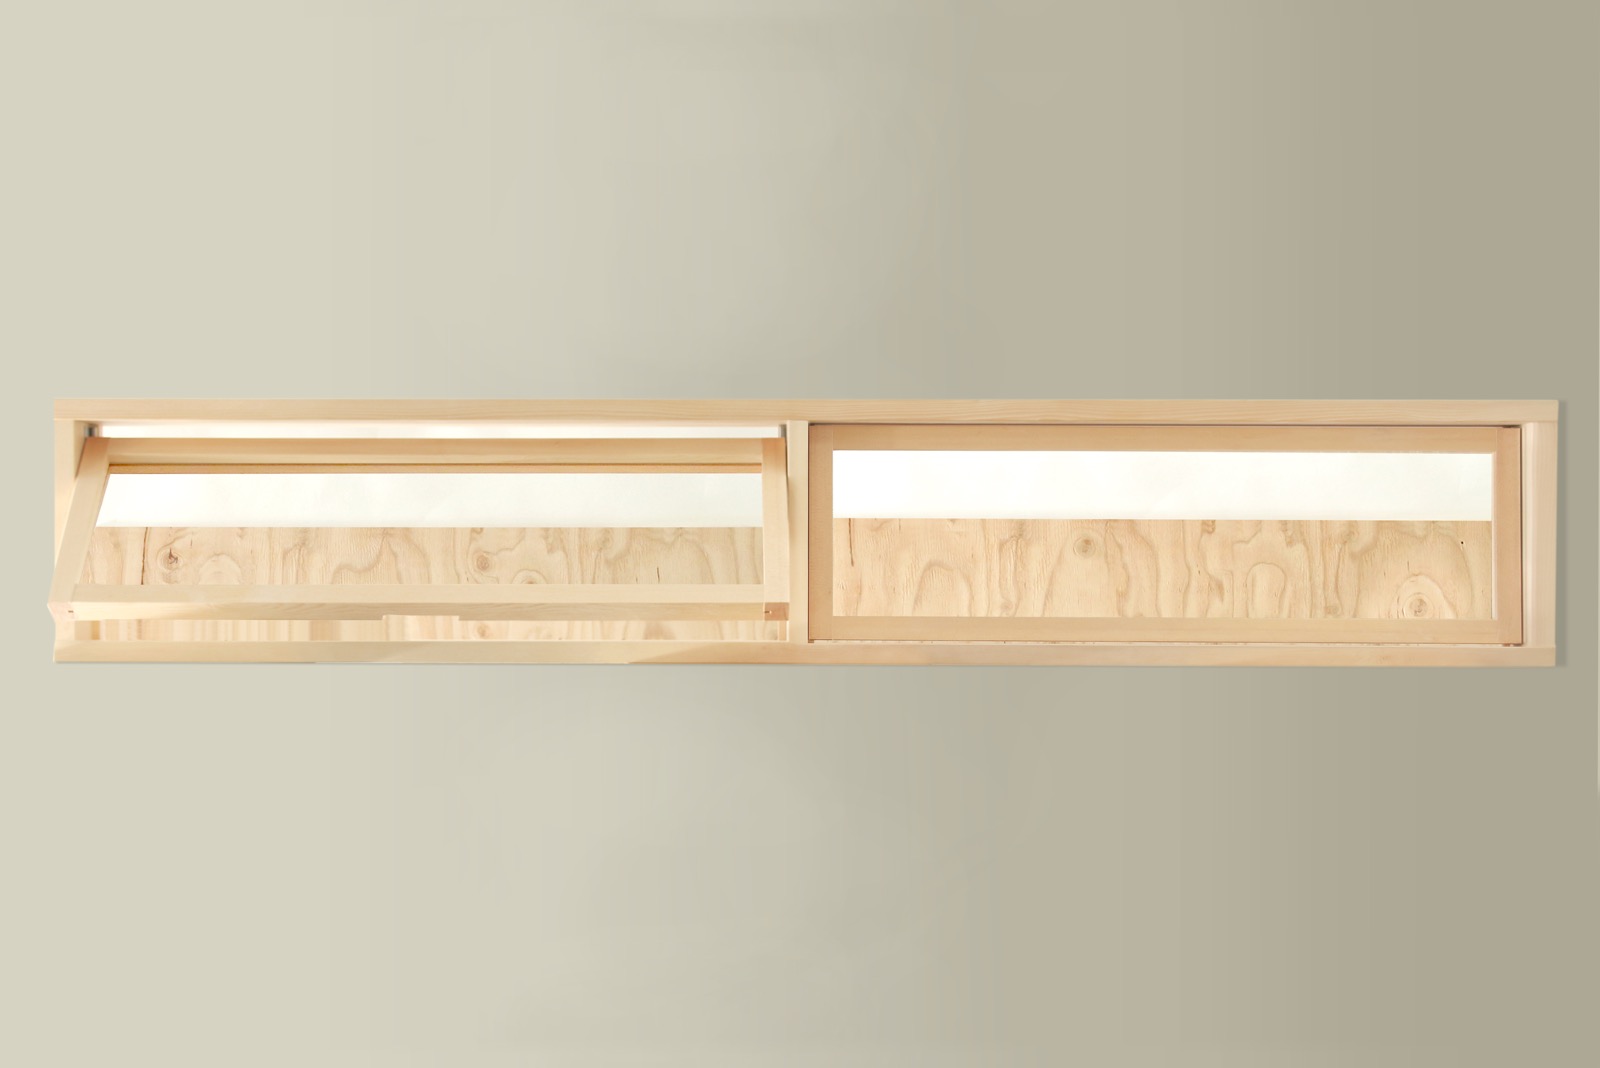 木製室内窓 横長2連 押し出しタイプ DW-DR008-04-G164 窓は約40度の角度まで開けることができます